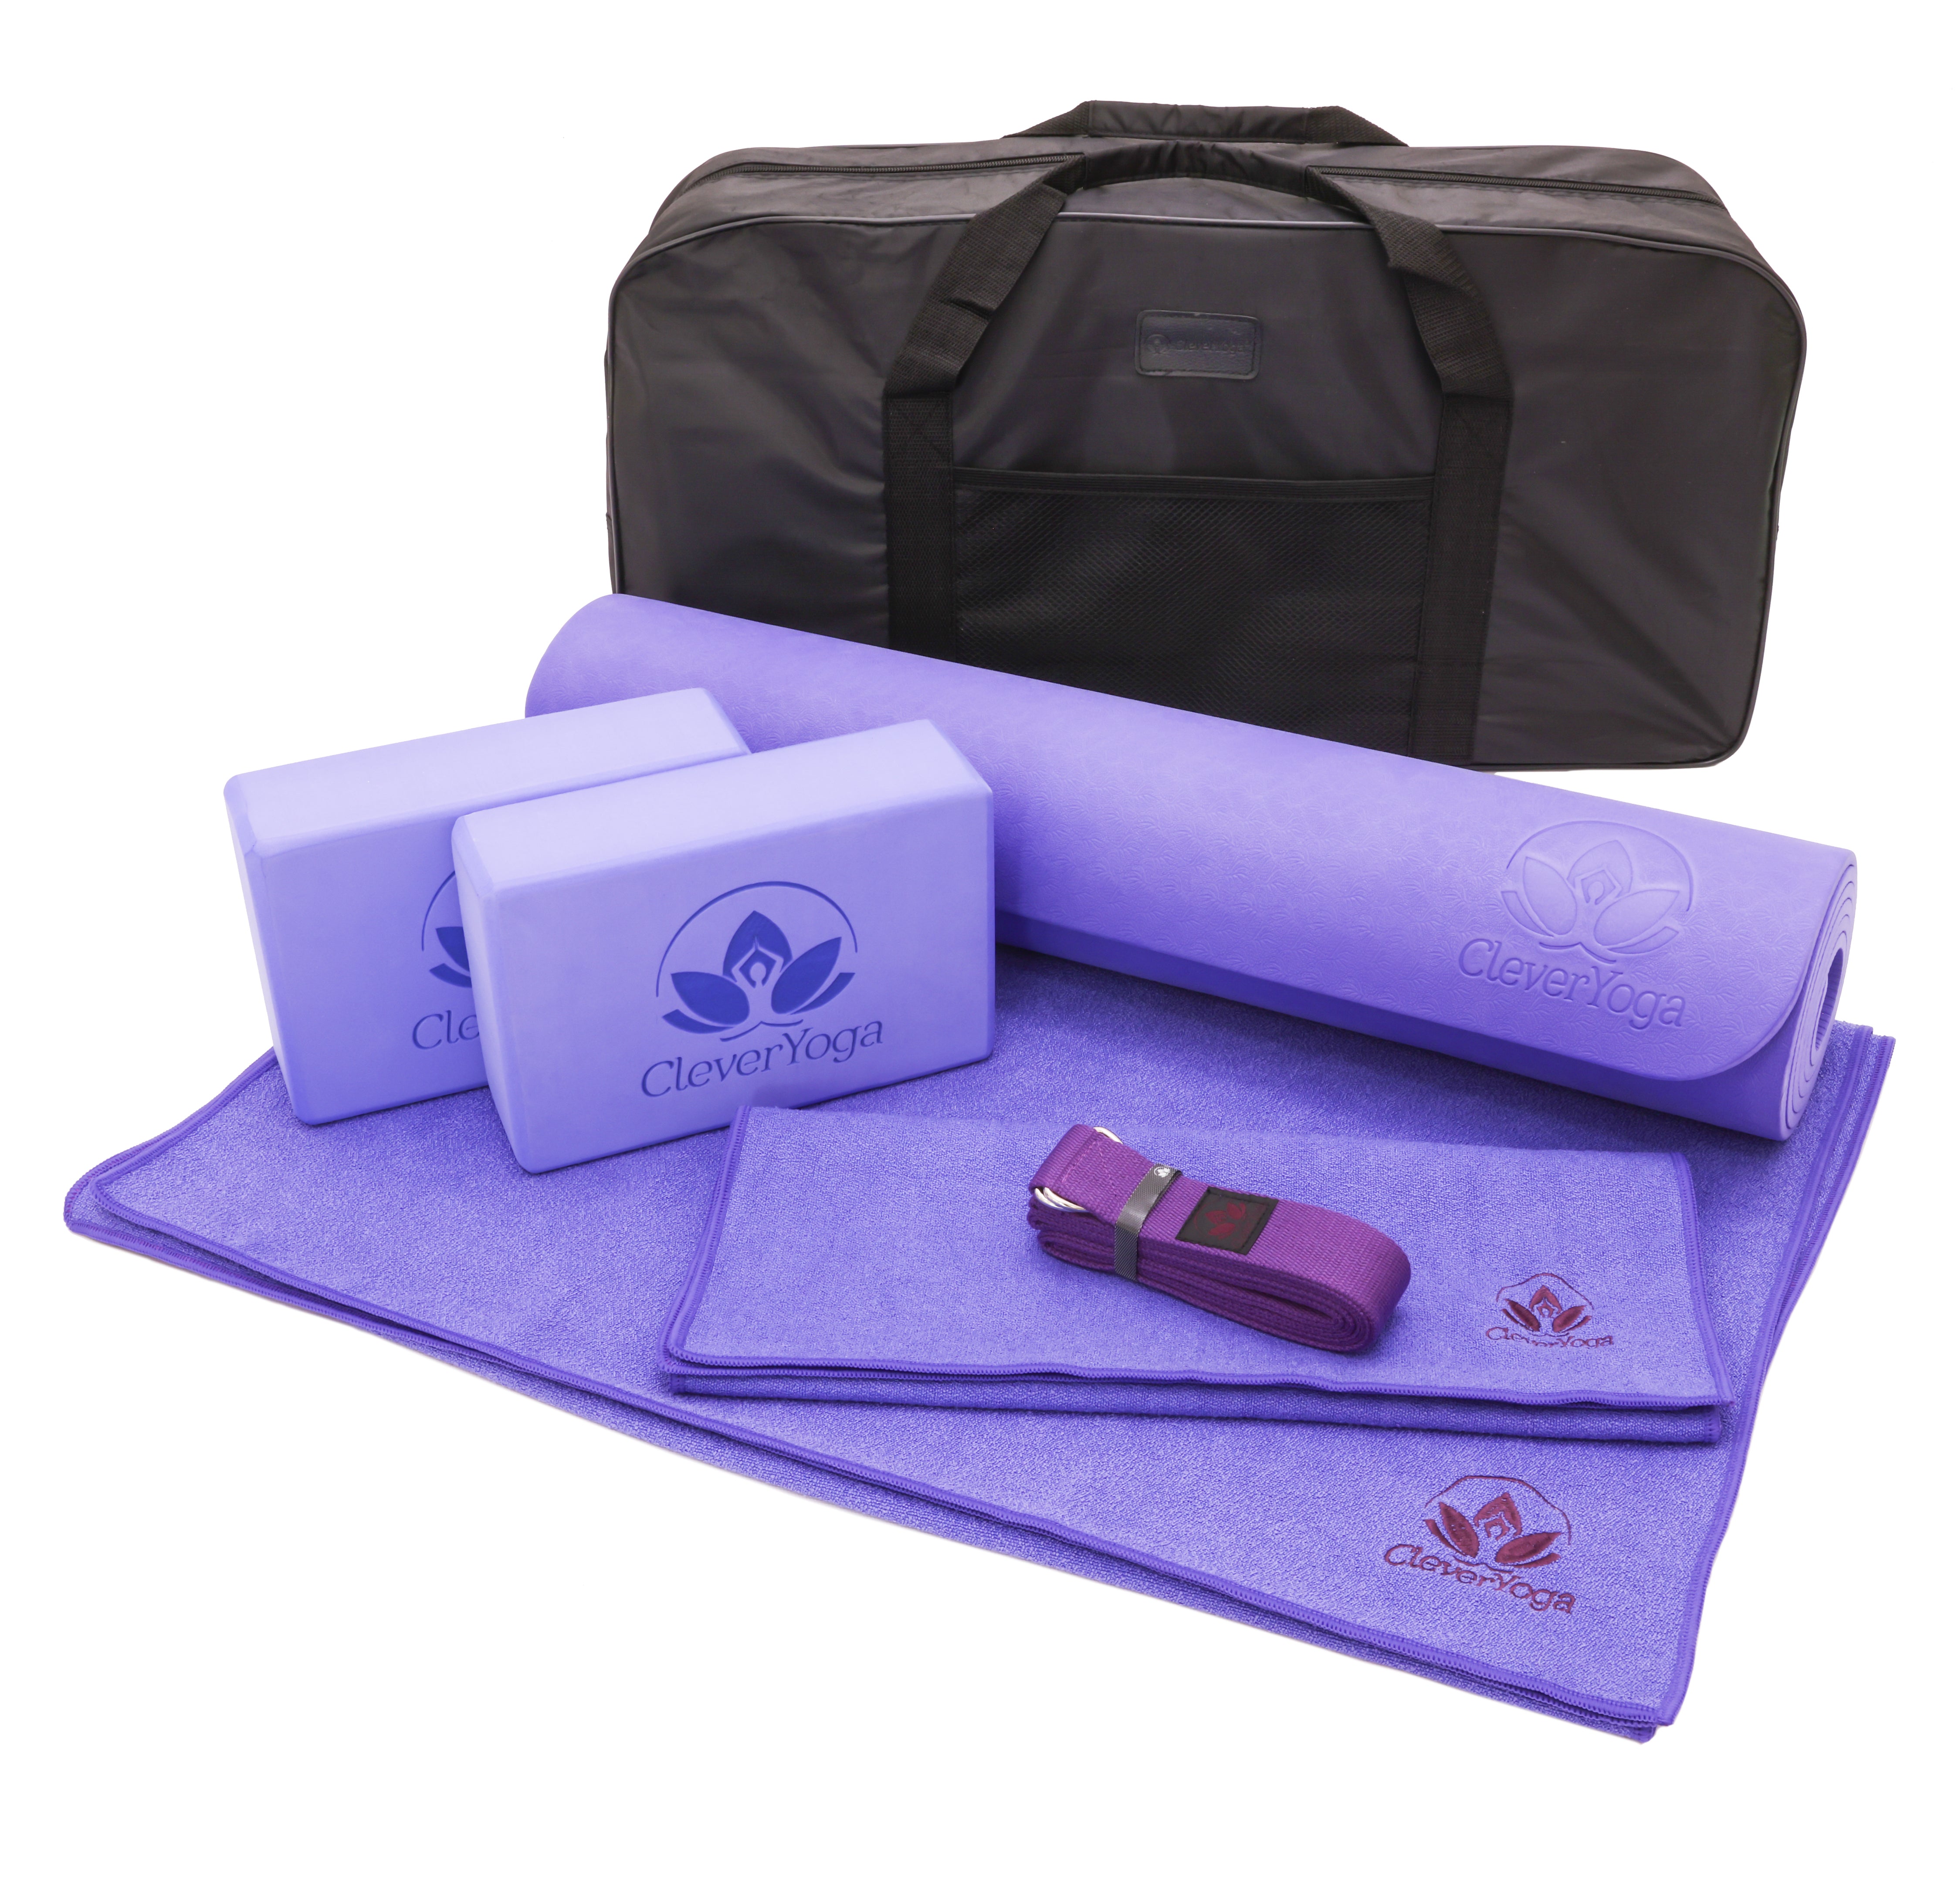 ABTECH Yoga Starter Kit for Kids - 5 Pcs. Yoga Blocks, Non-Slip